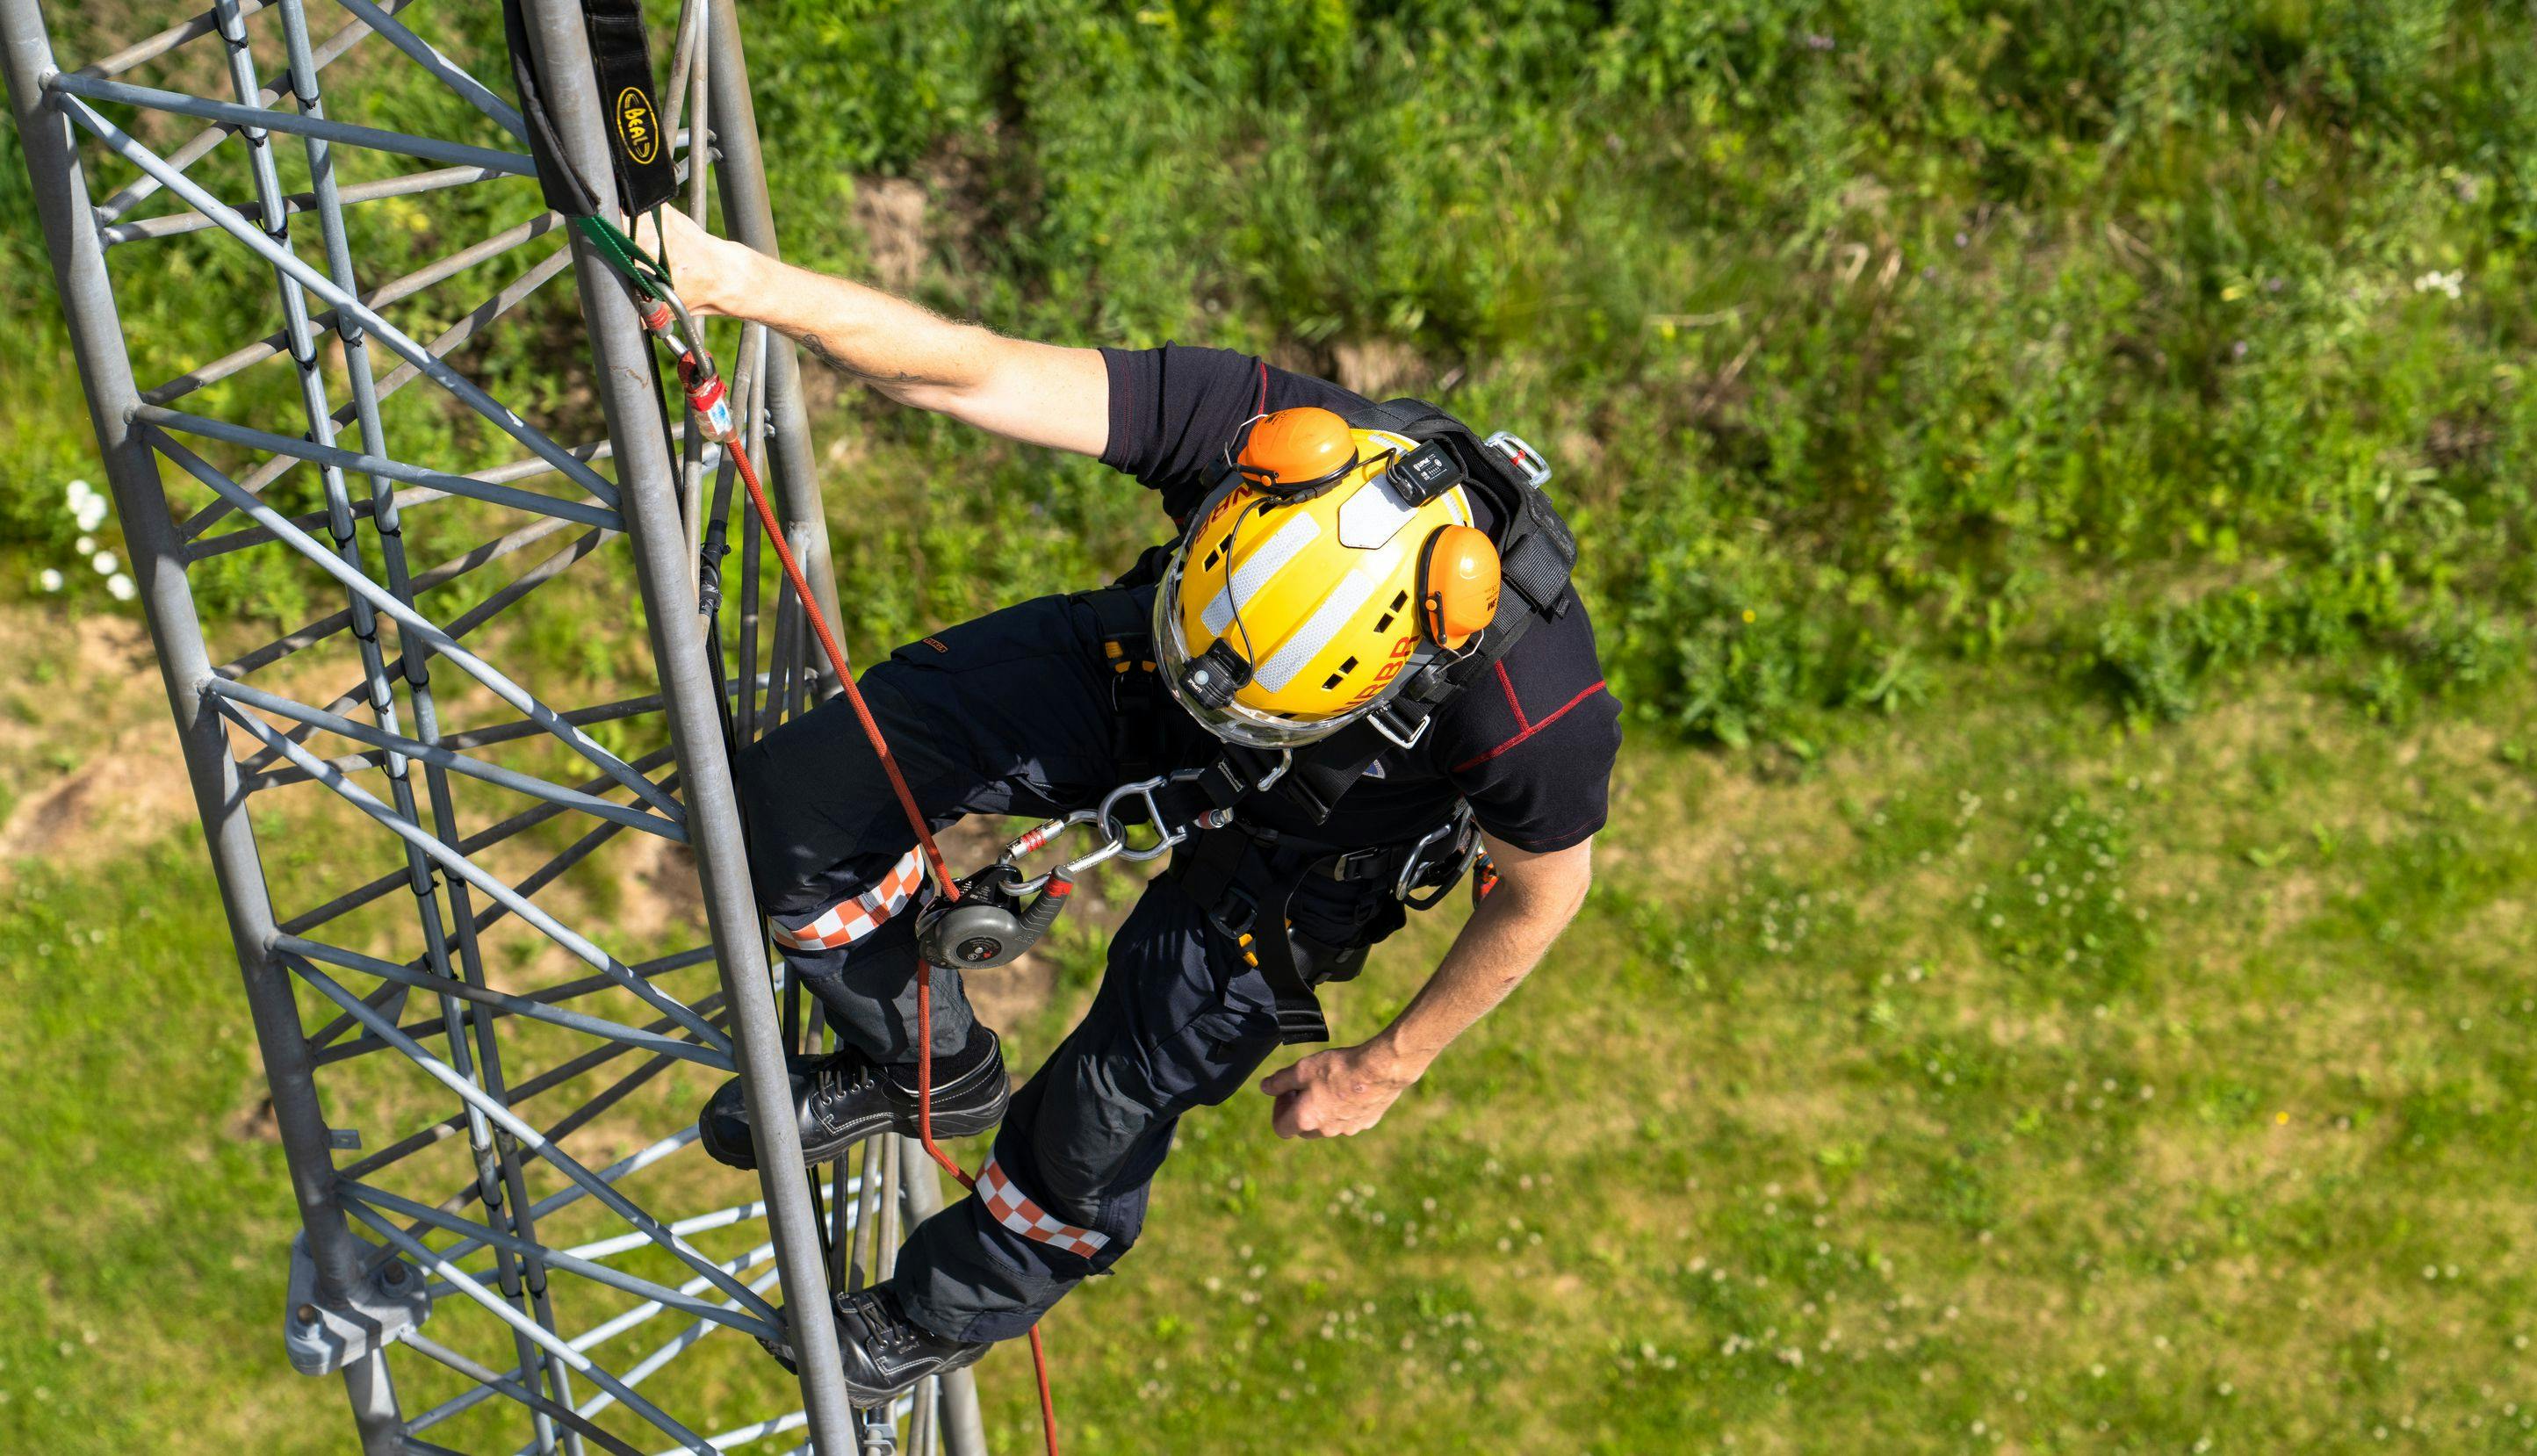 Brannkonstabel med hjelm og sikkerhetsutstyr klatrer i mast.